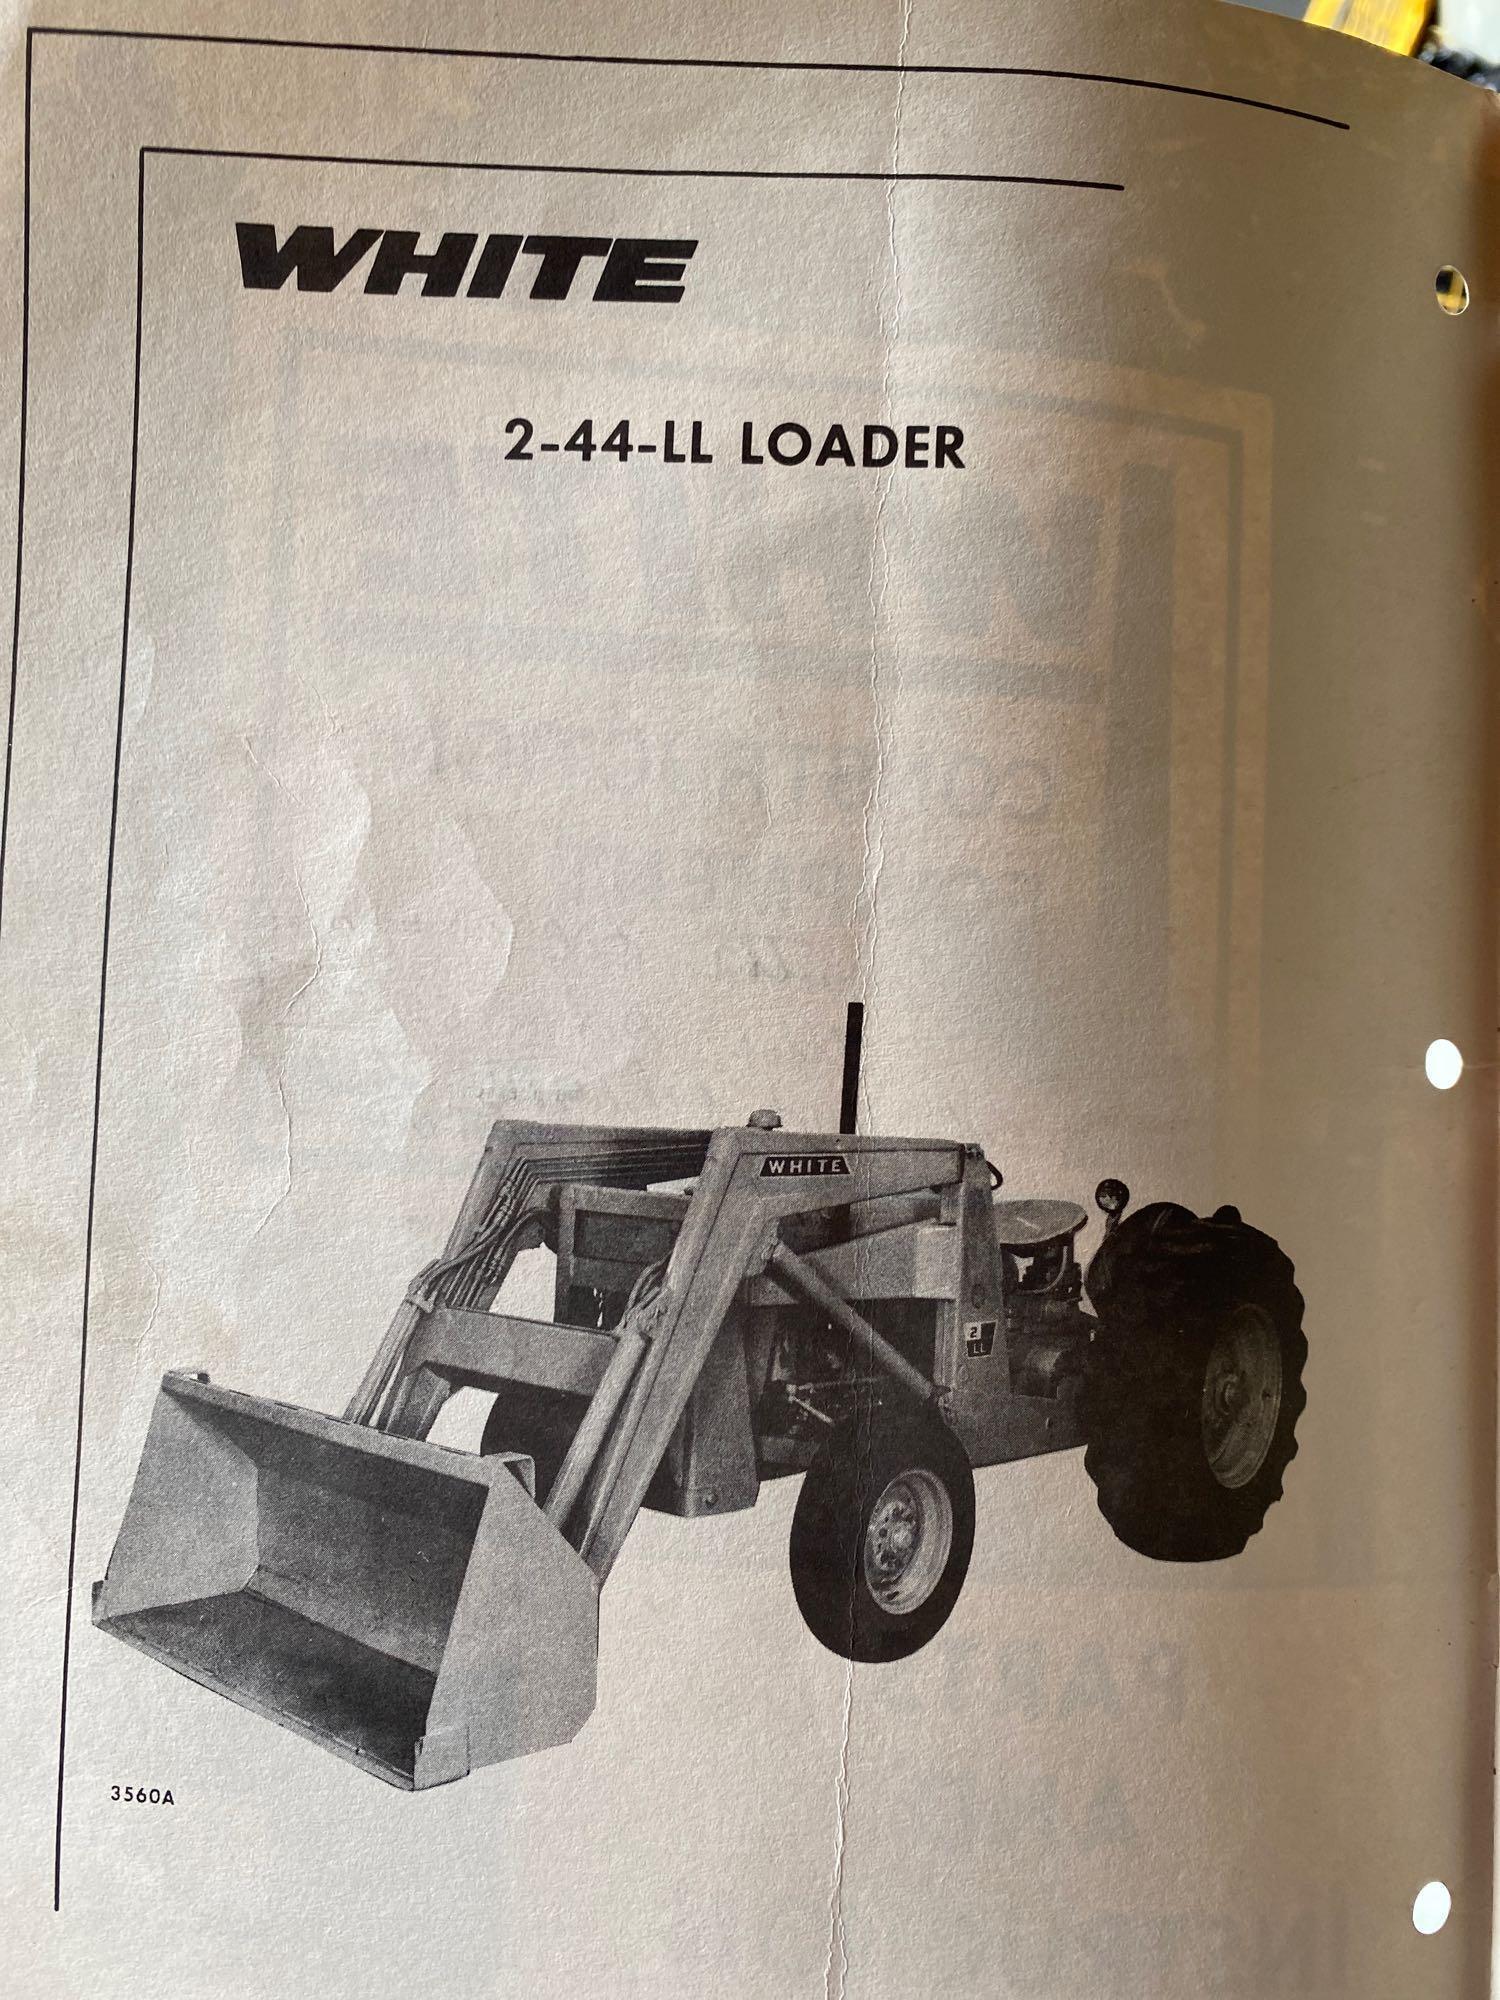 White 2-44-LL loader w/ backhoe